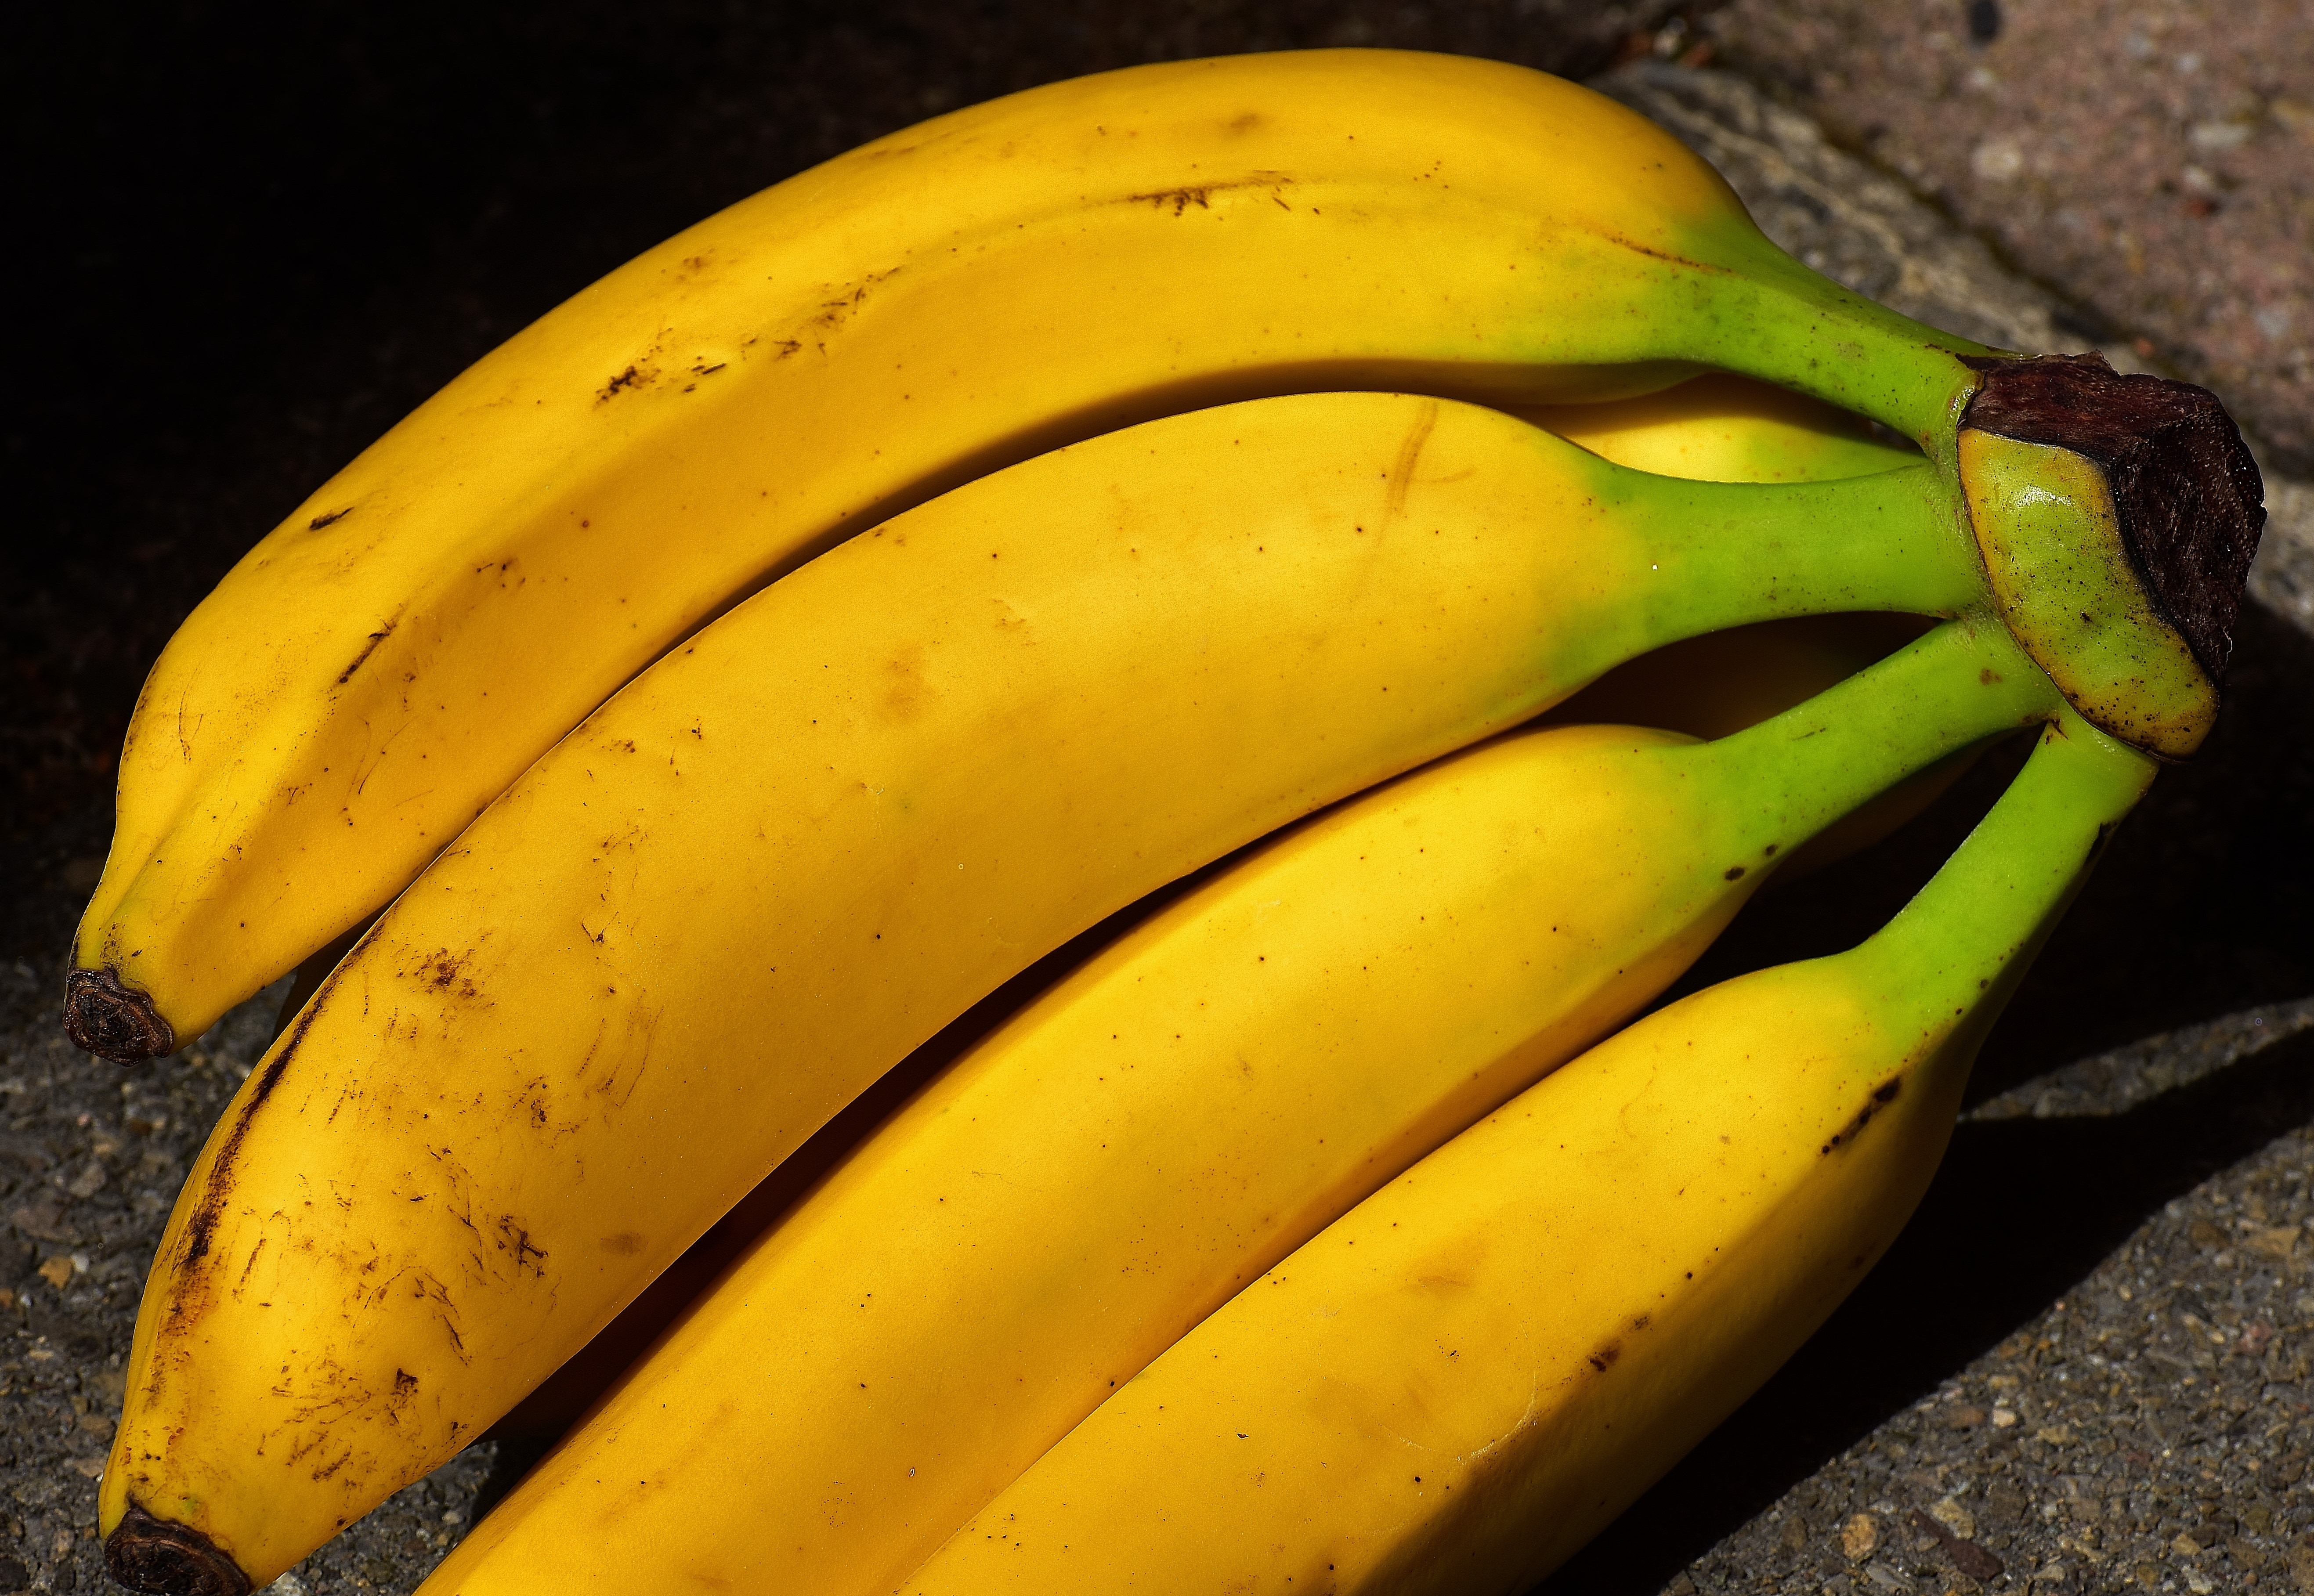 yellow banana fruit